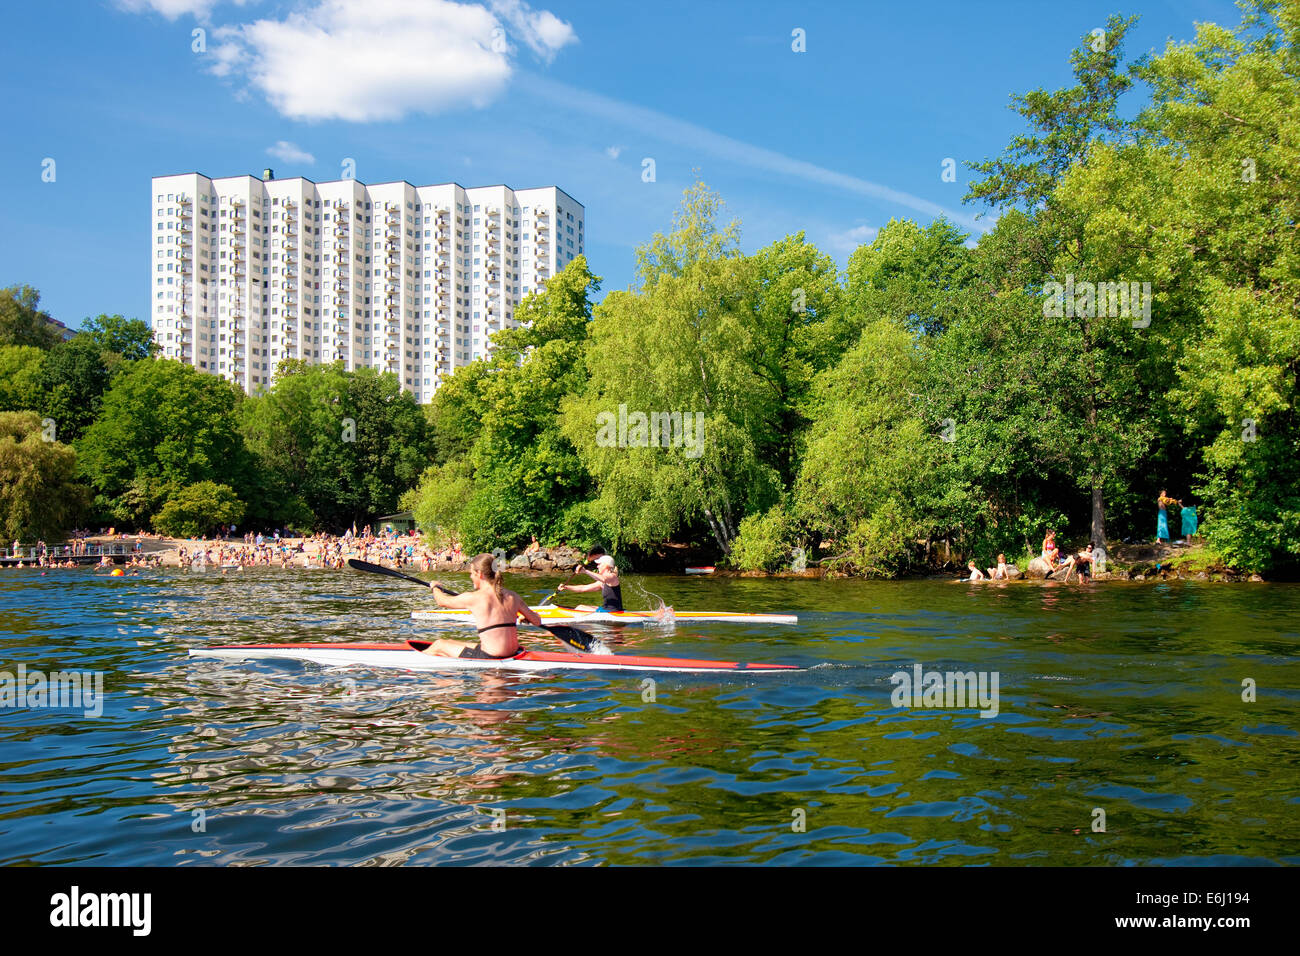 Stoccolma, Svezia - Kayak e divertirsi in acqua a Smedsuddsbadet Foto Stock